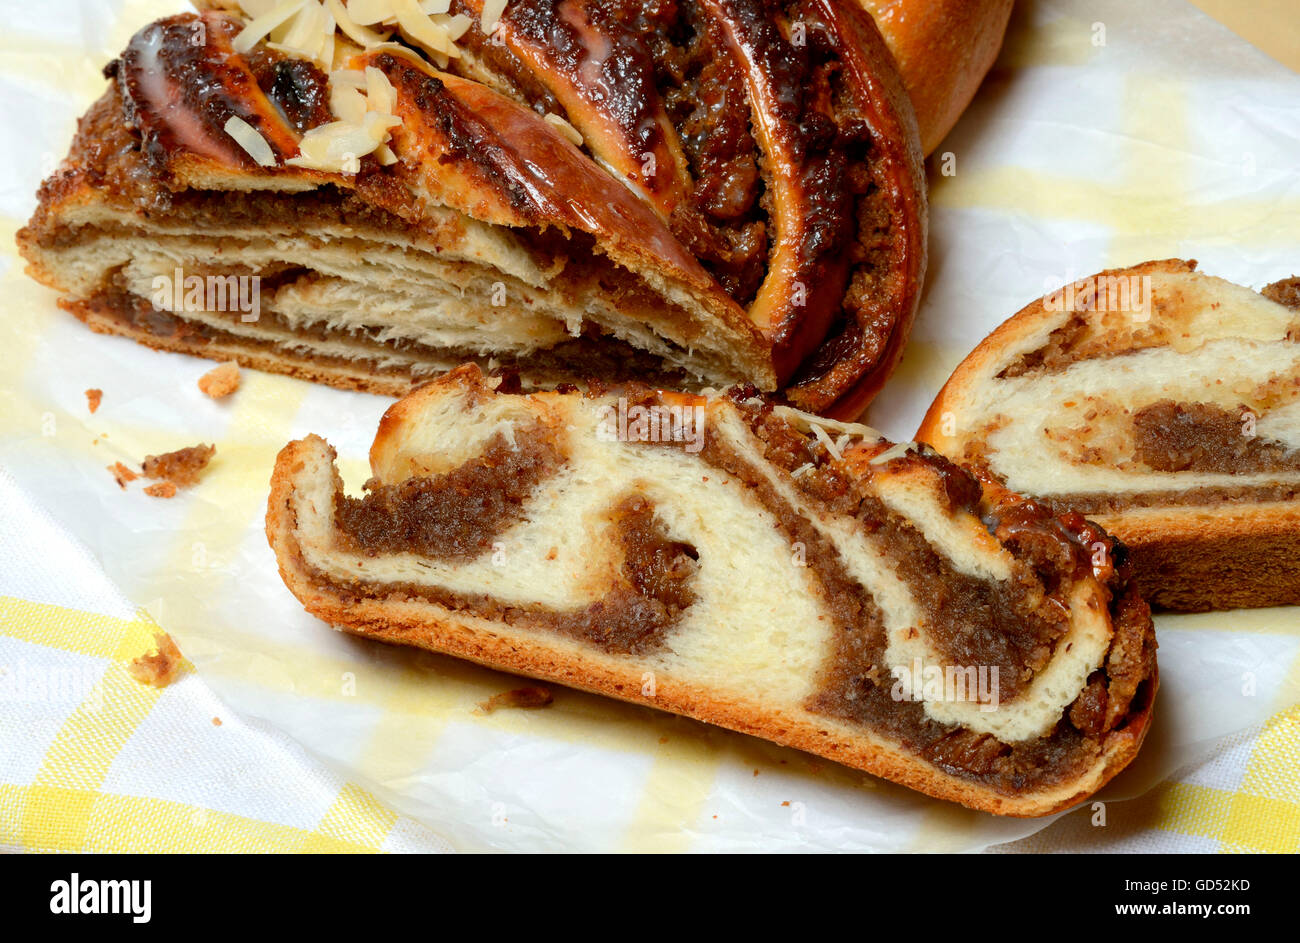 plaited yeast bun, braided yeast bun, sweet yeast bread Stock Photo